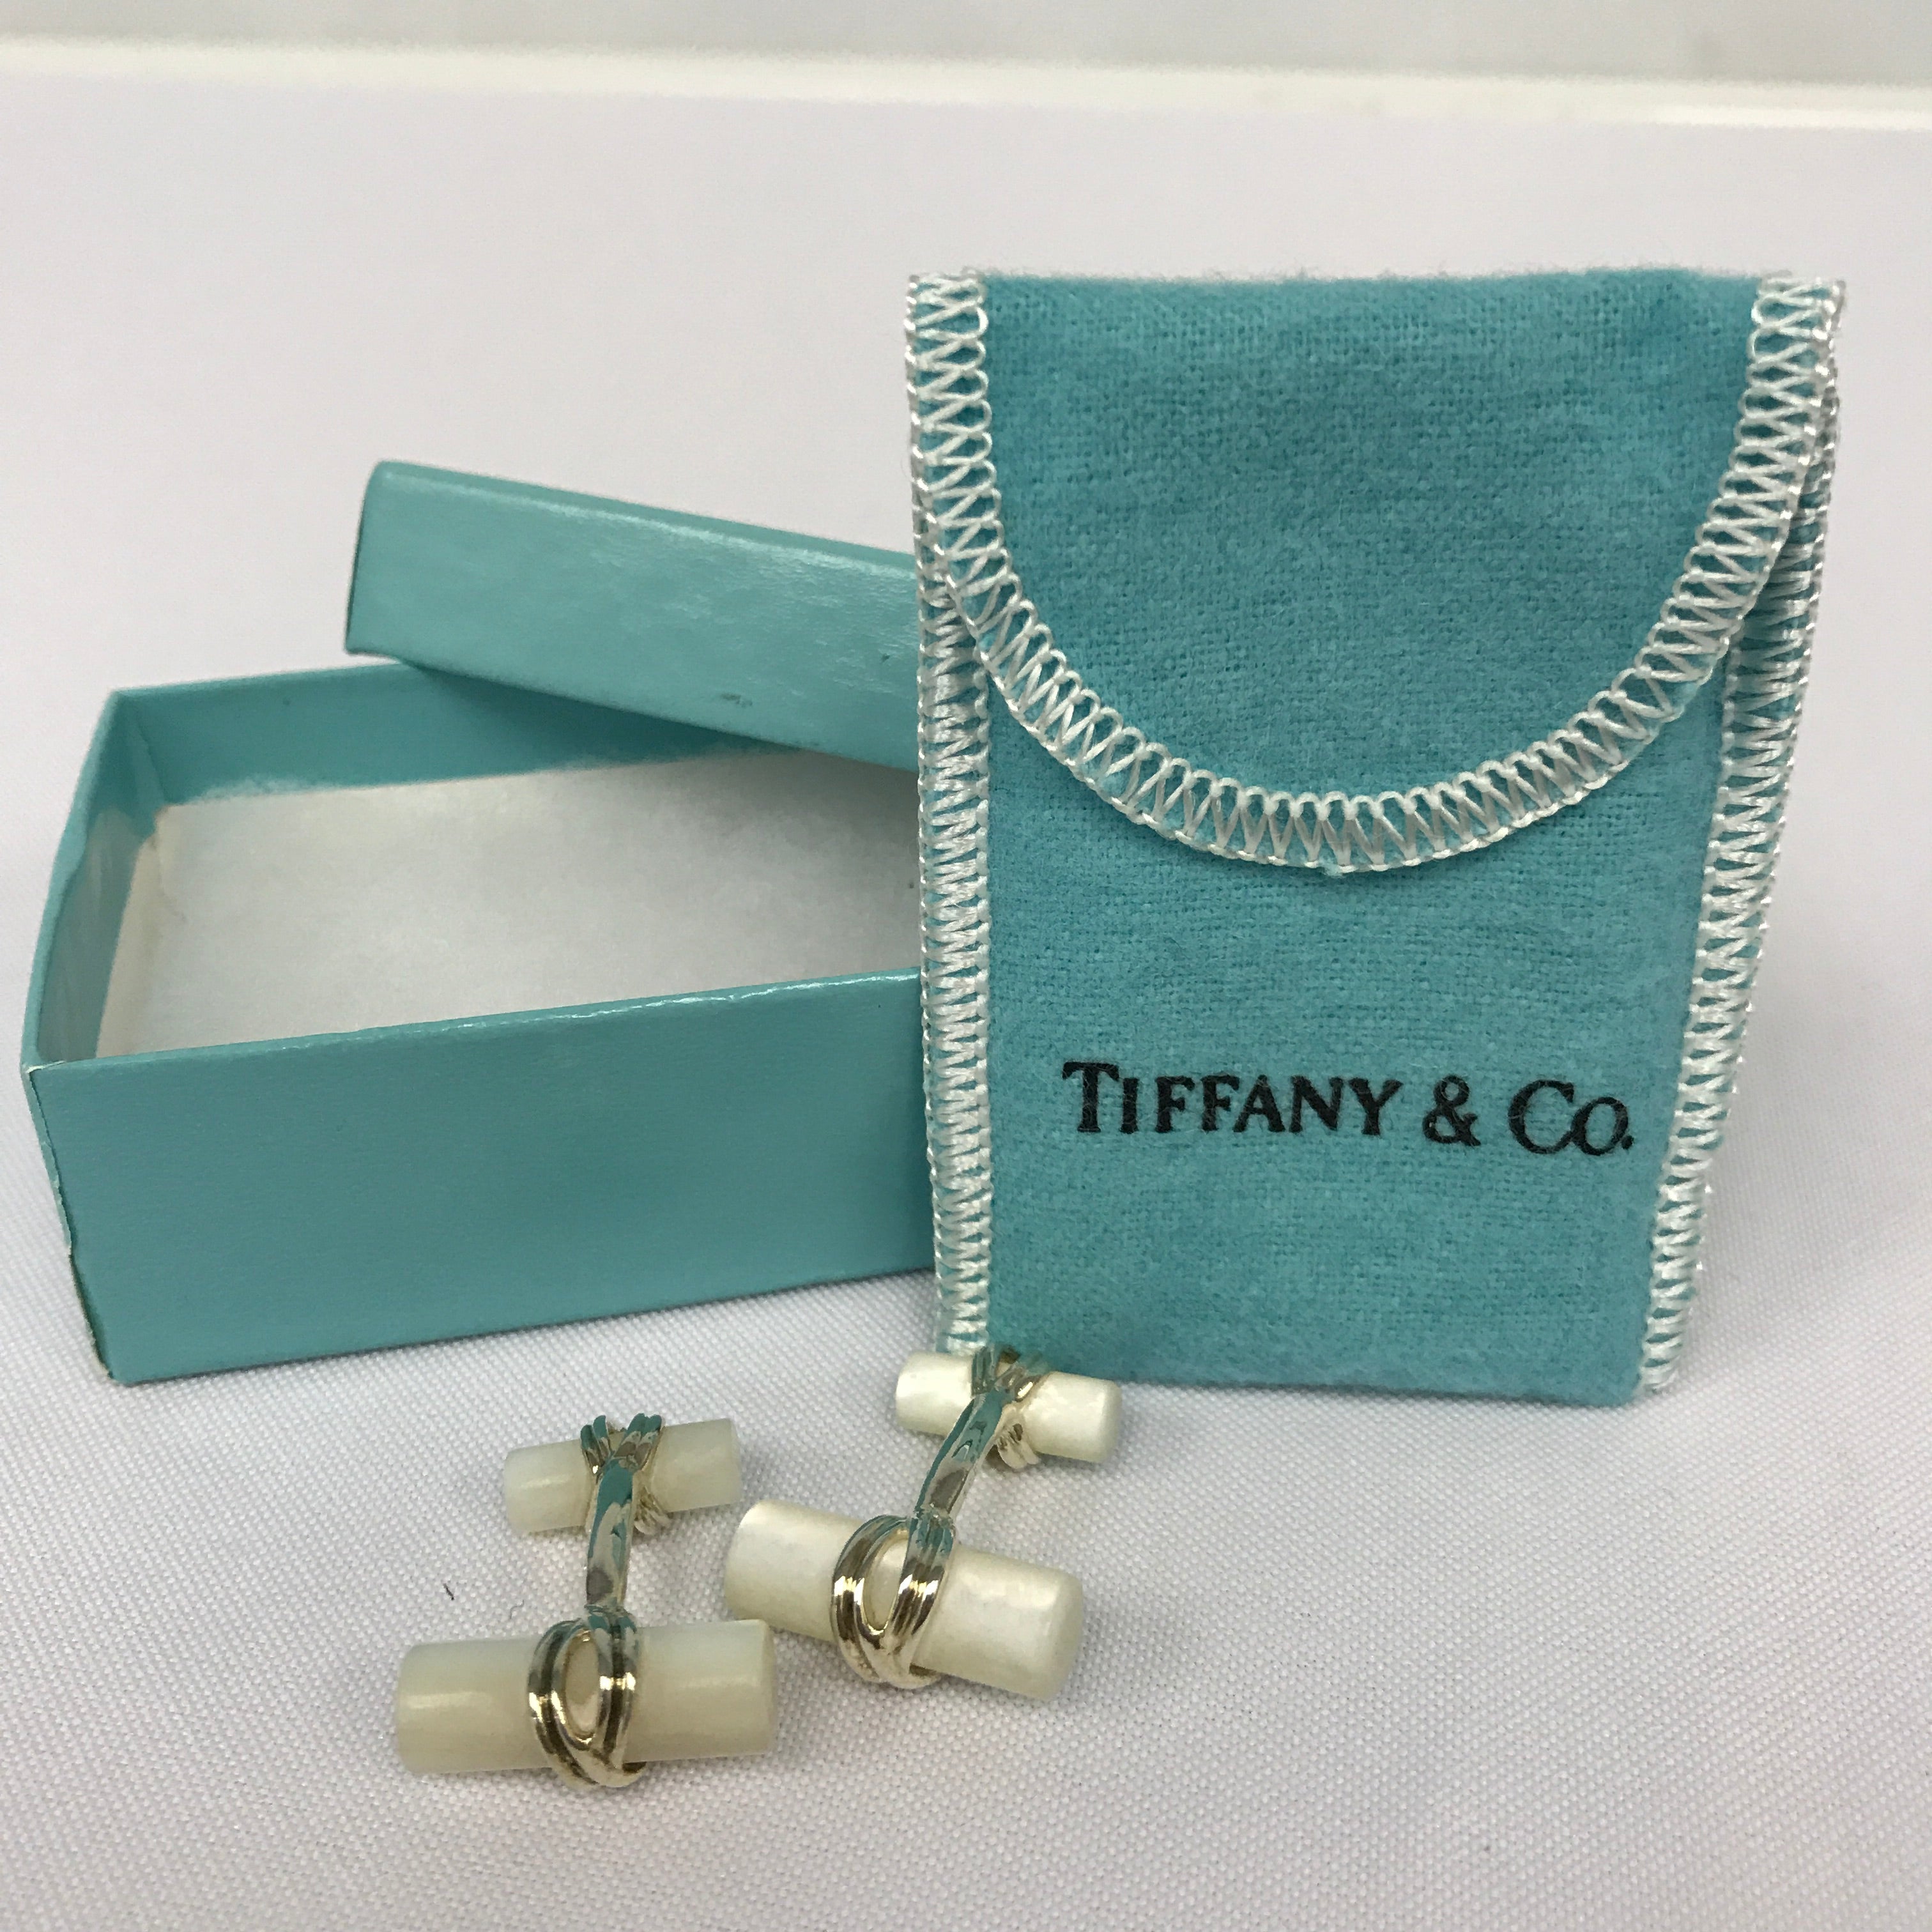 Tiffany & Co Candle Cufflinks